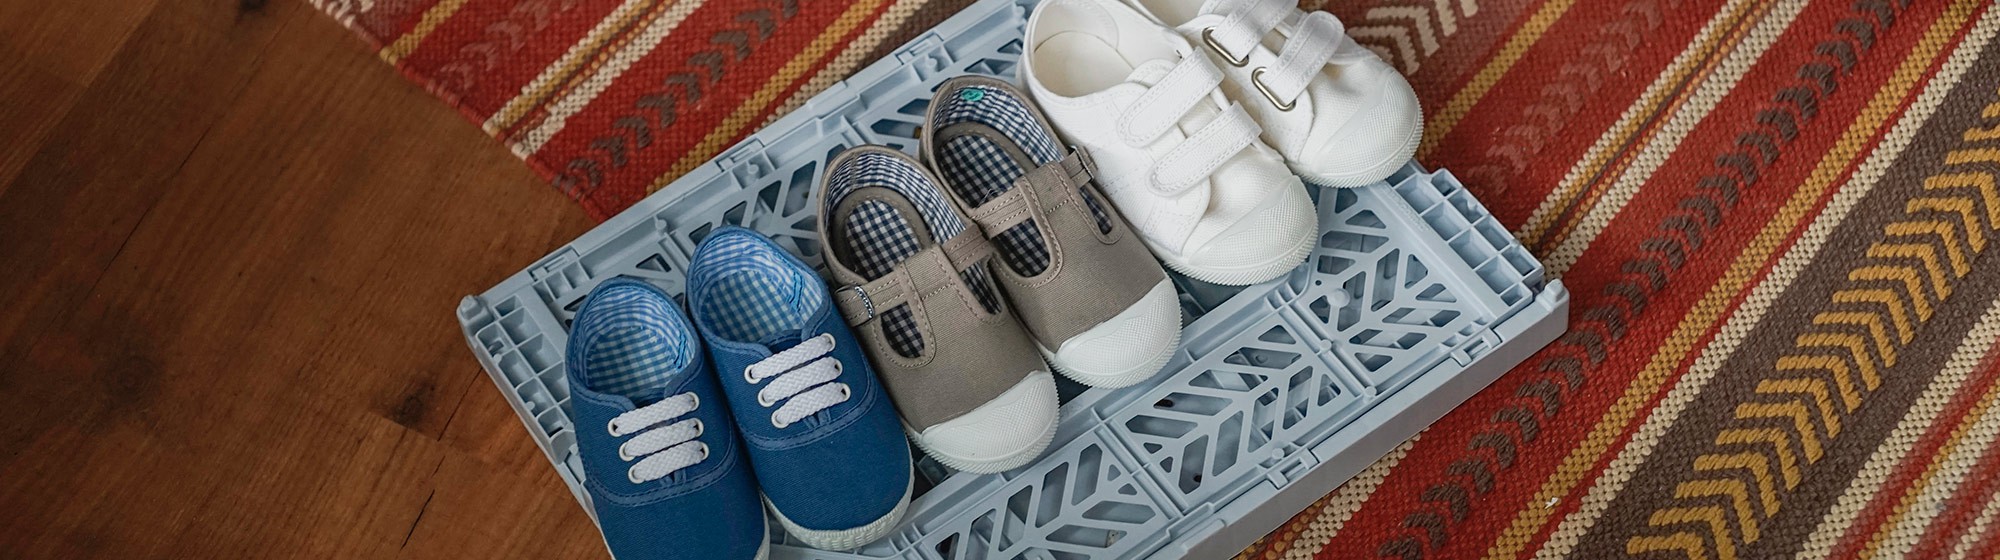 Zapatillas deportivas de lona con tiras autoadherentes bebé niña - blanco  claro liso con motivos